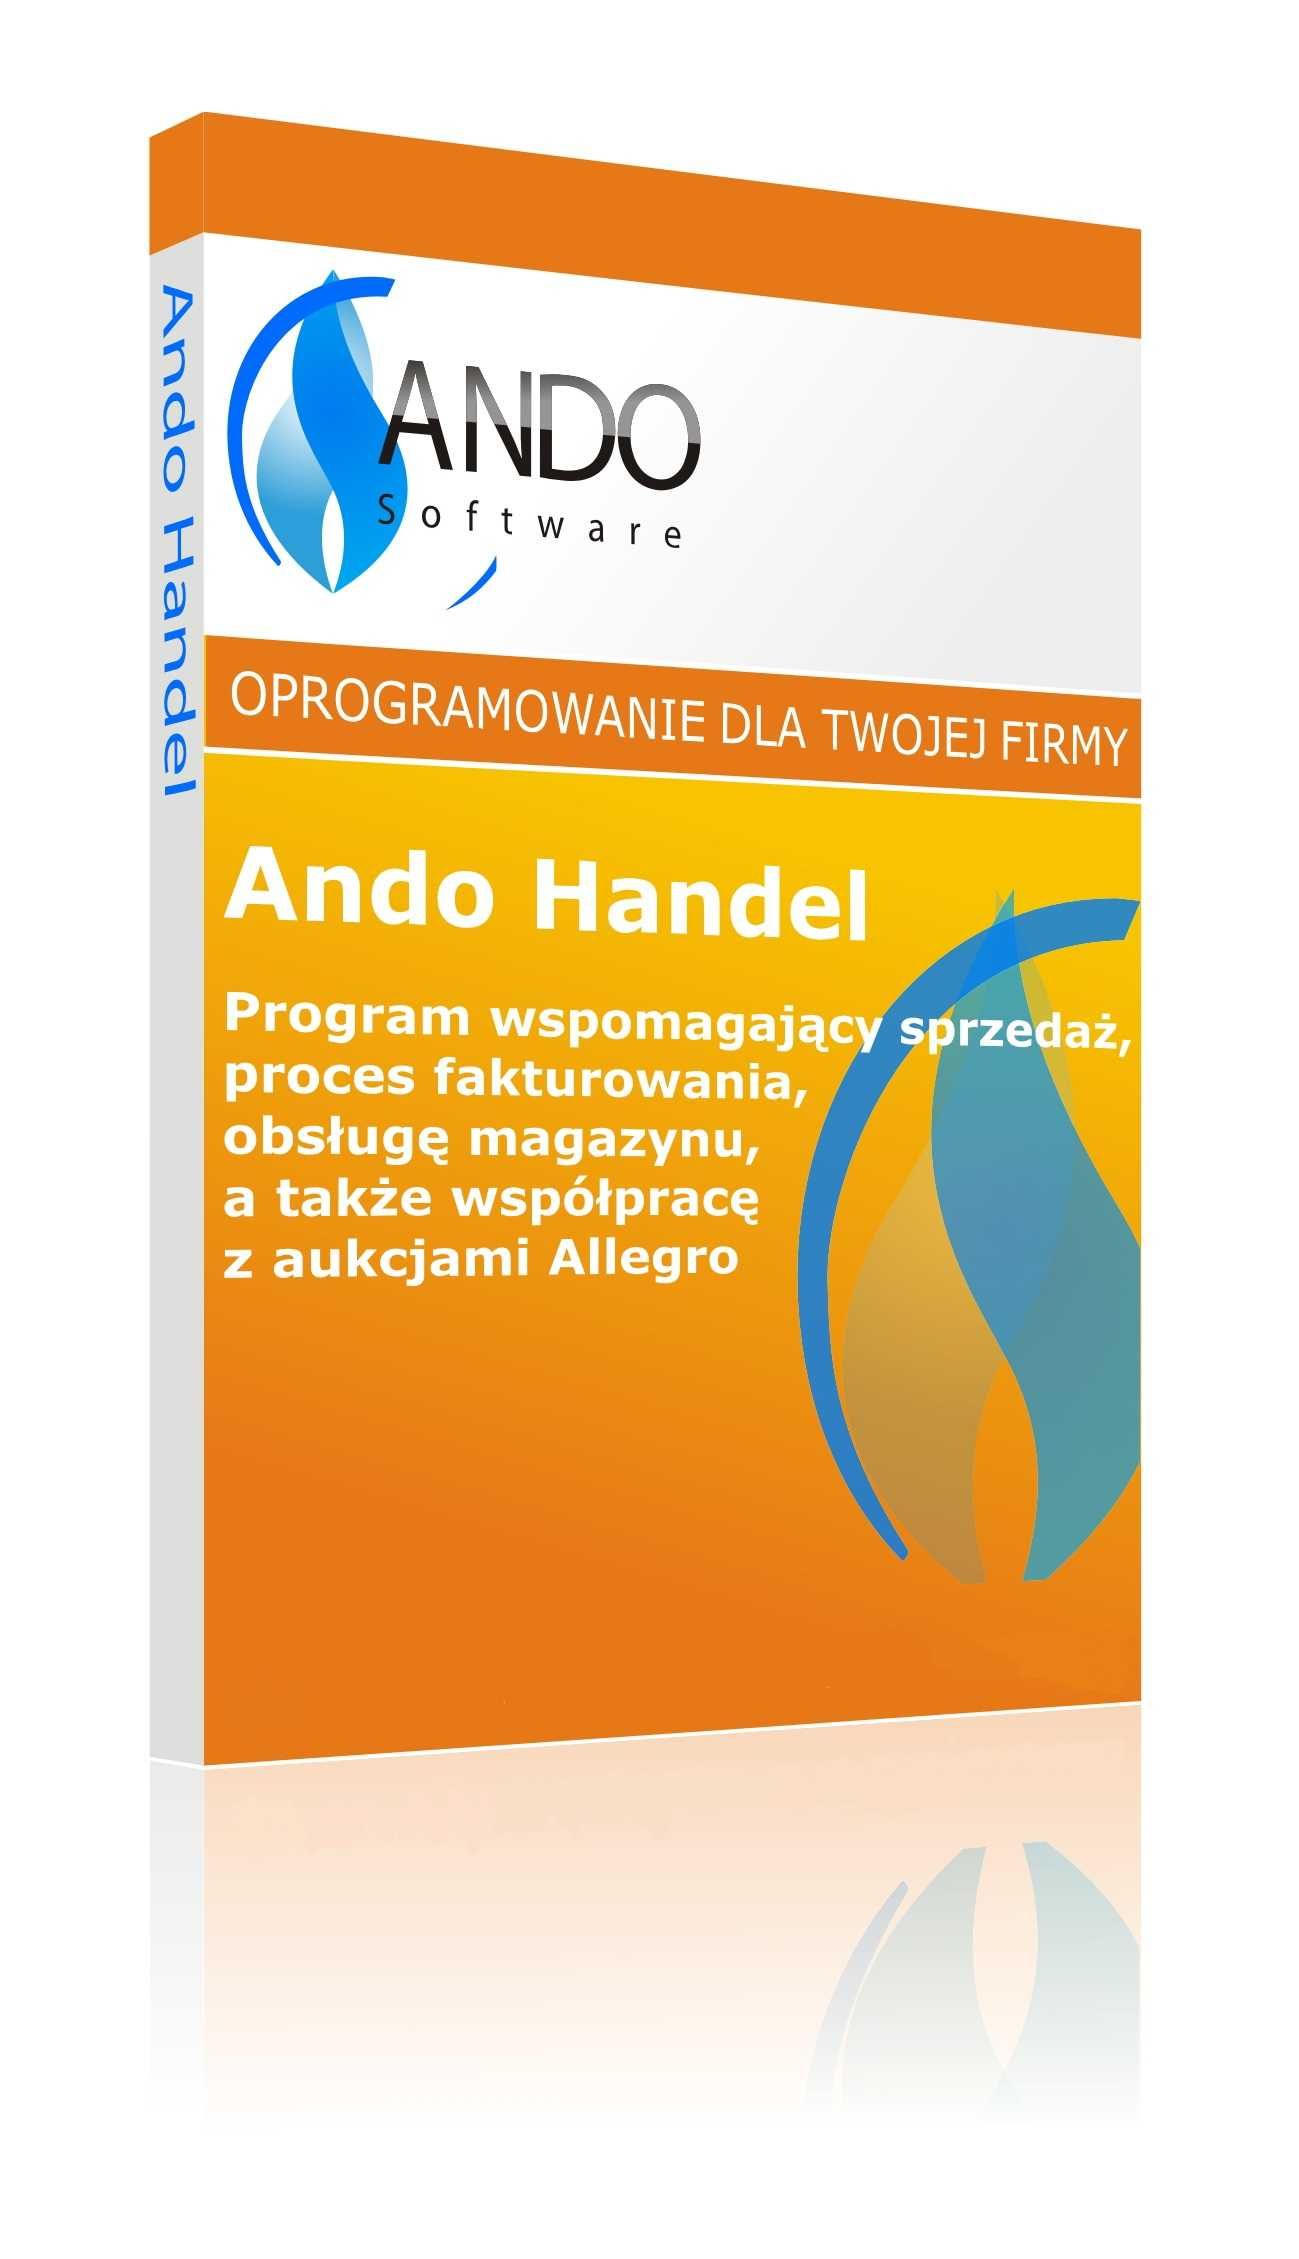 Ando Handel - Program do prowadzenia sprzedaży i obsługi firmy